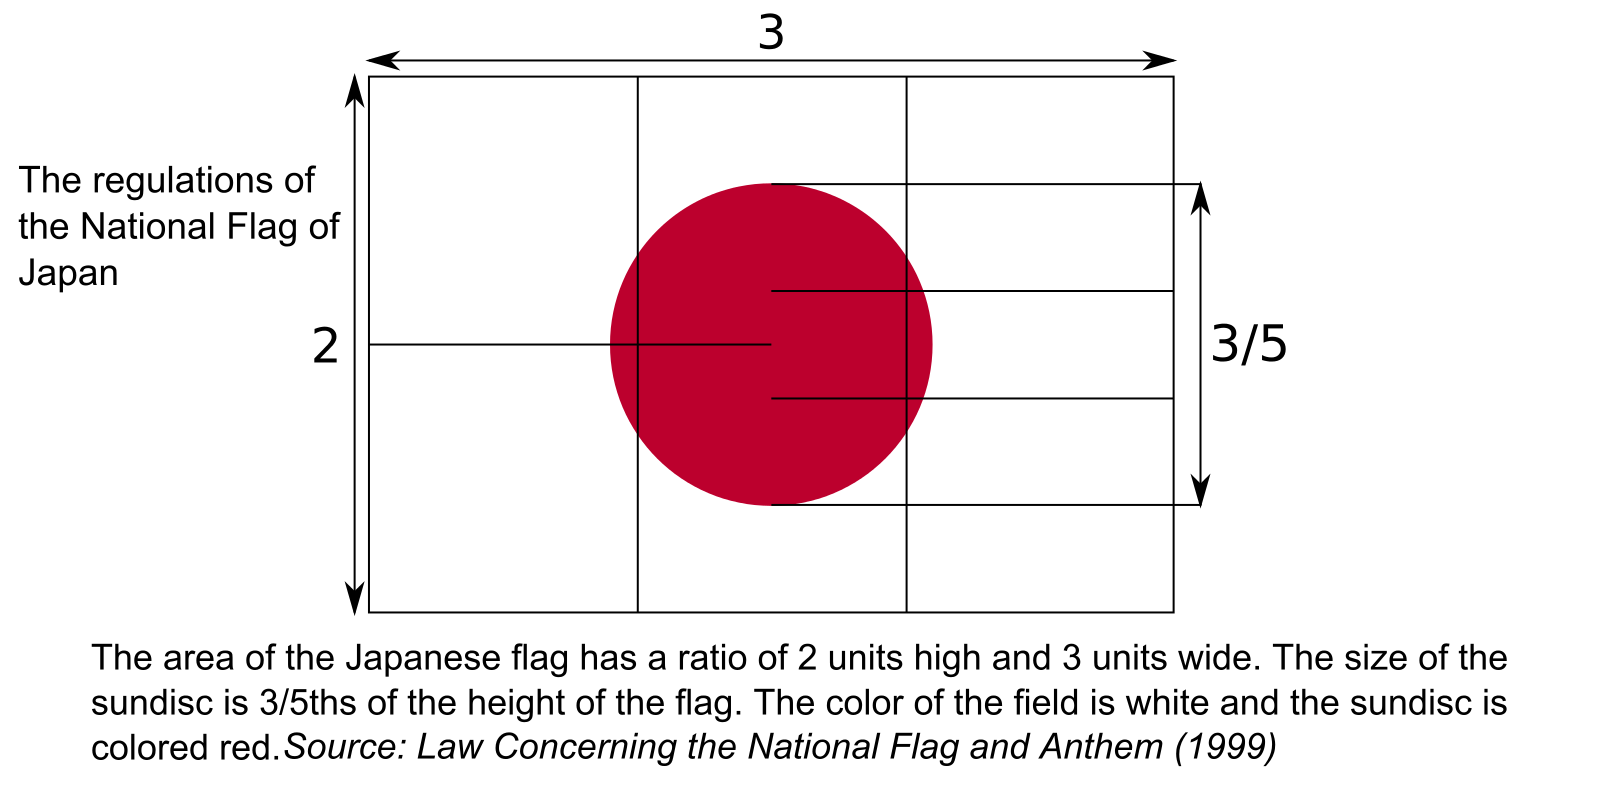 Krav til størrelsesforhold for det japanske flagget